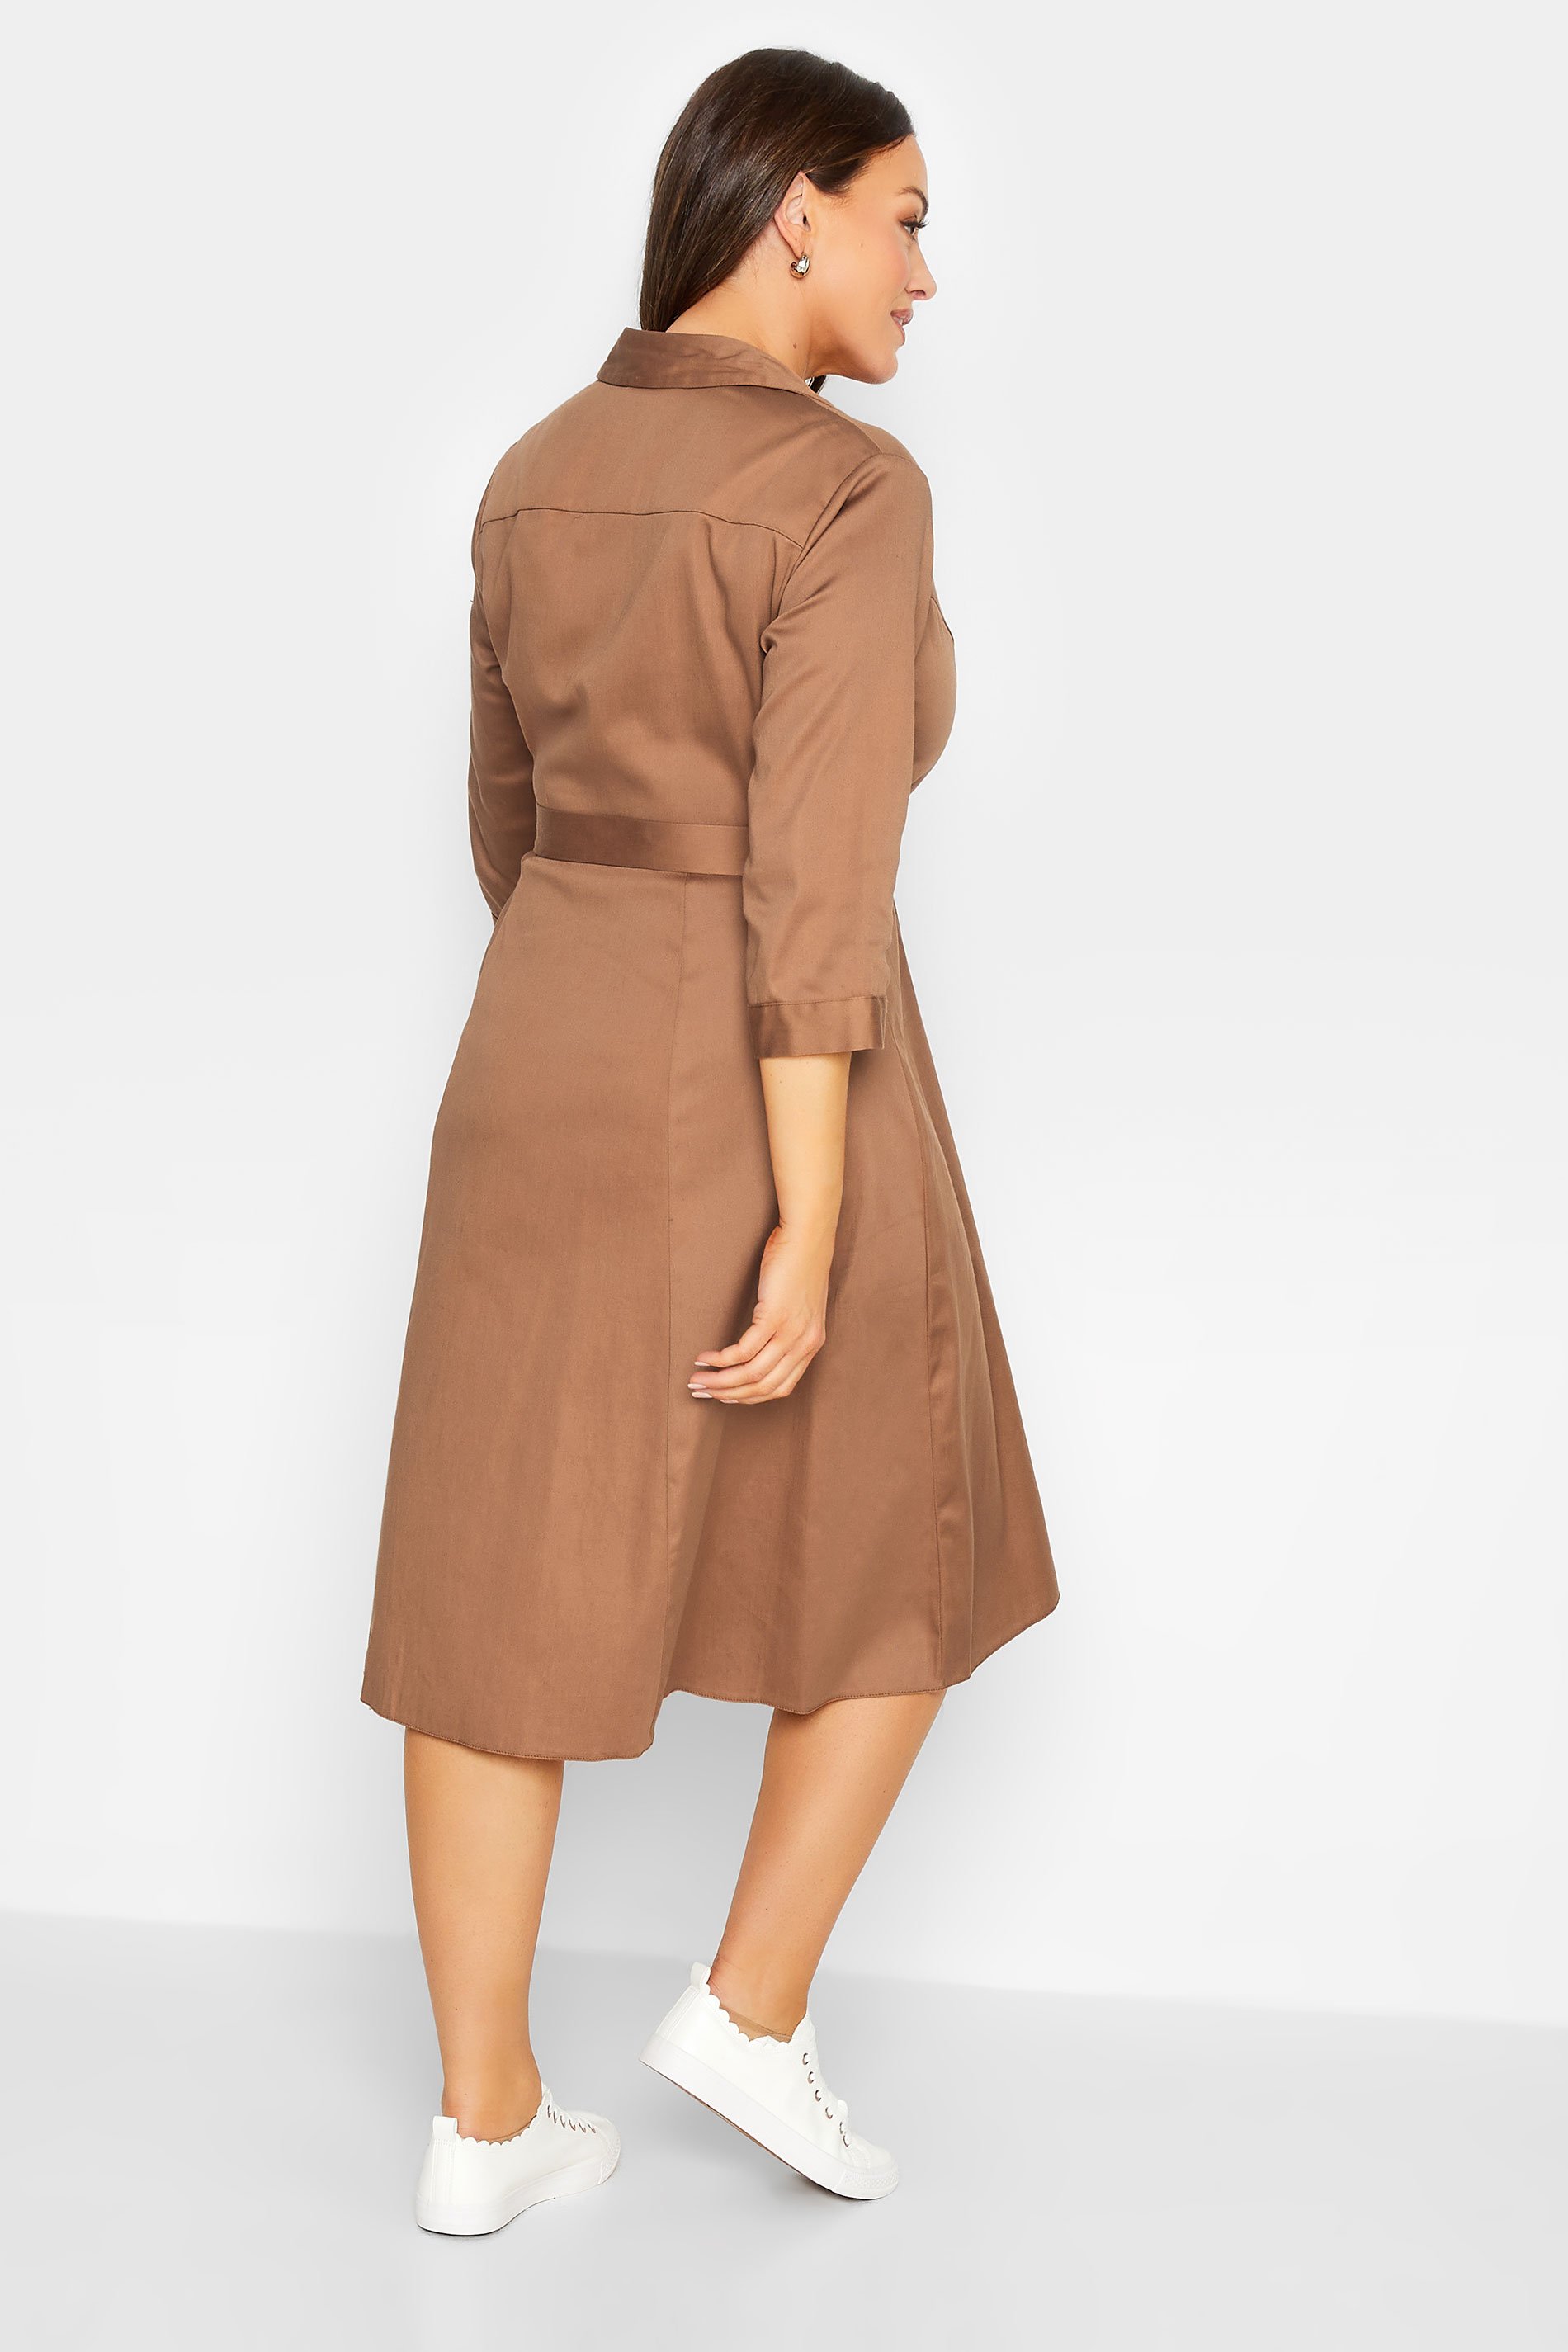 M&Co Brown Tie Waist Shirt Dress | M&Co 3